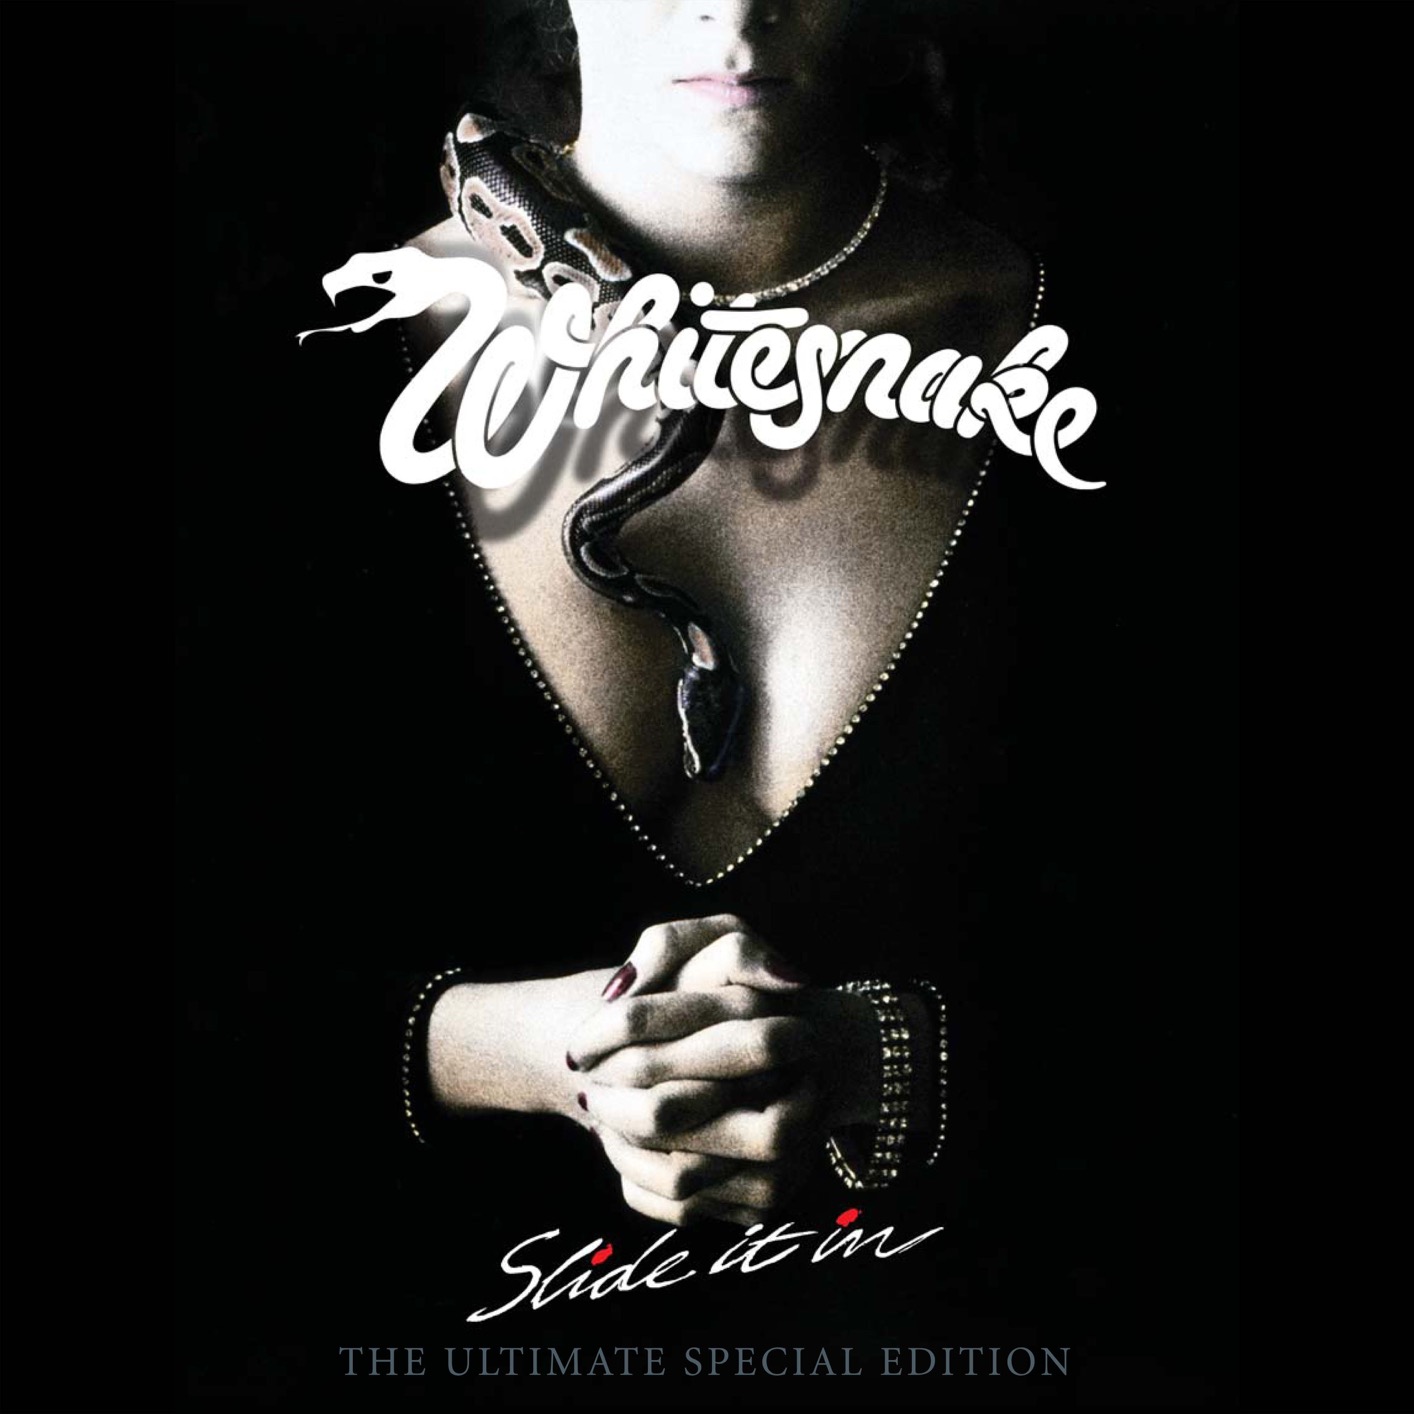 Whitesnake - Slide It In: The Ultimate Edition (2019 Remaster) (2019) [FLAC 24bit/96kHz]